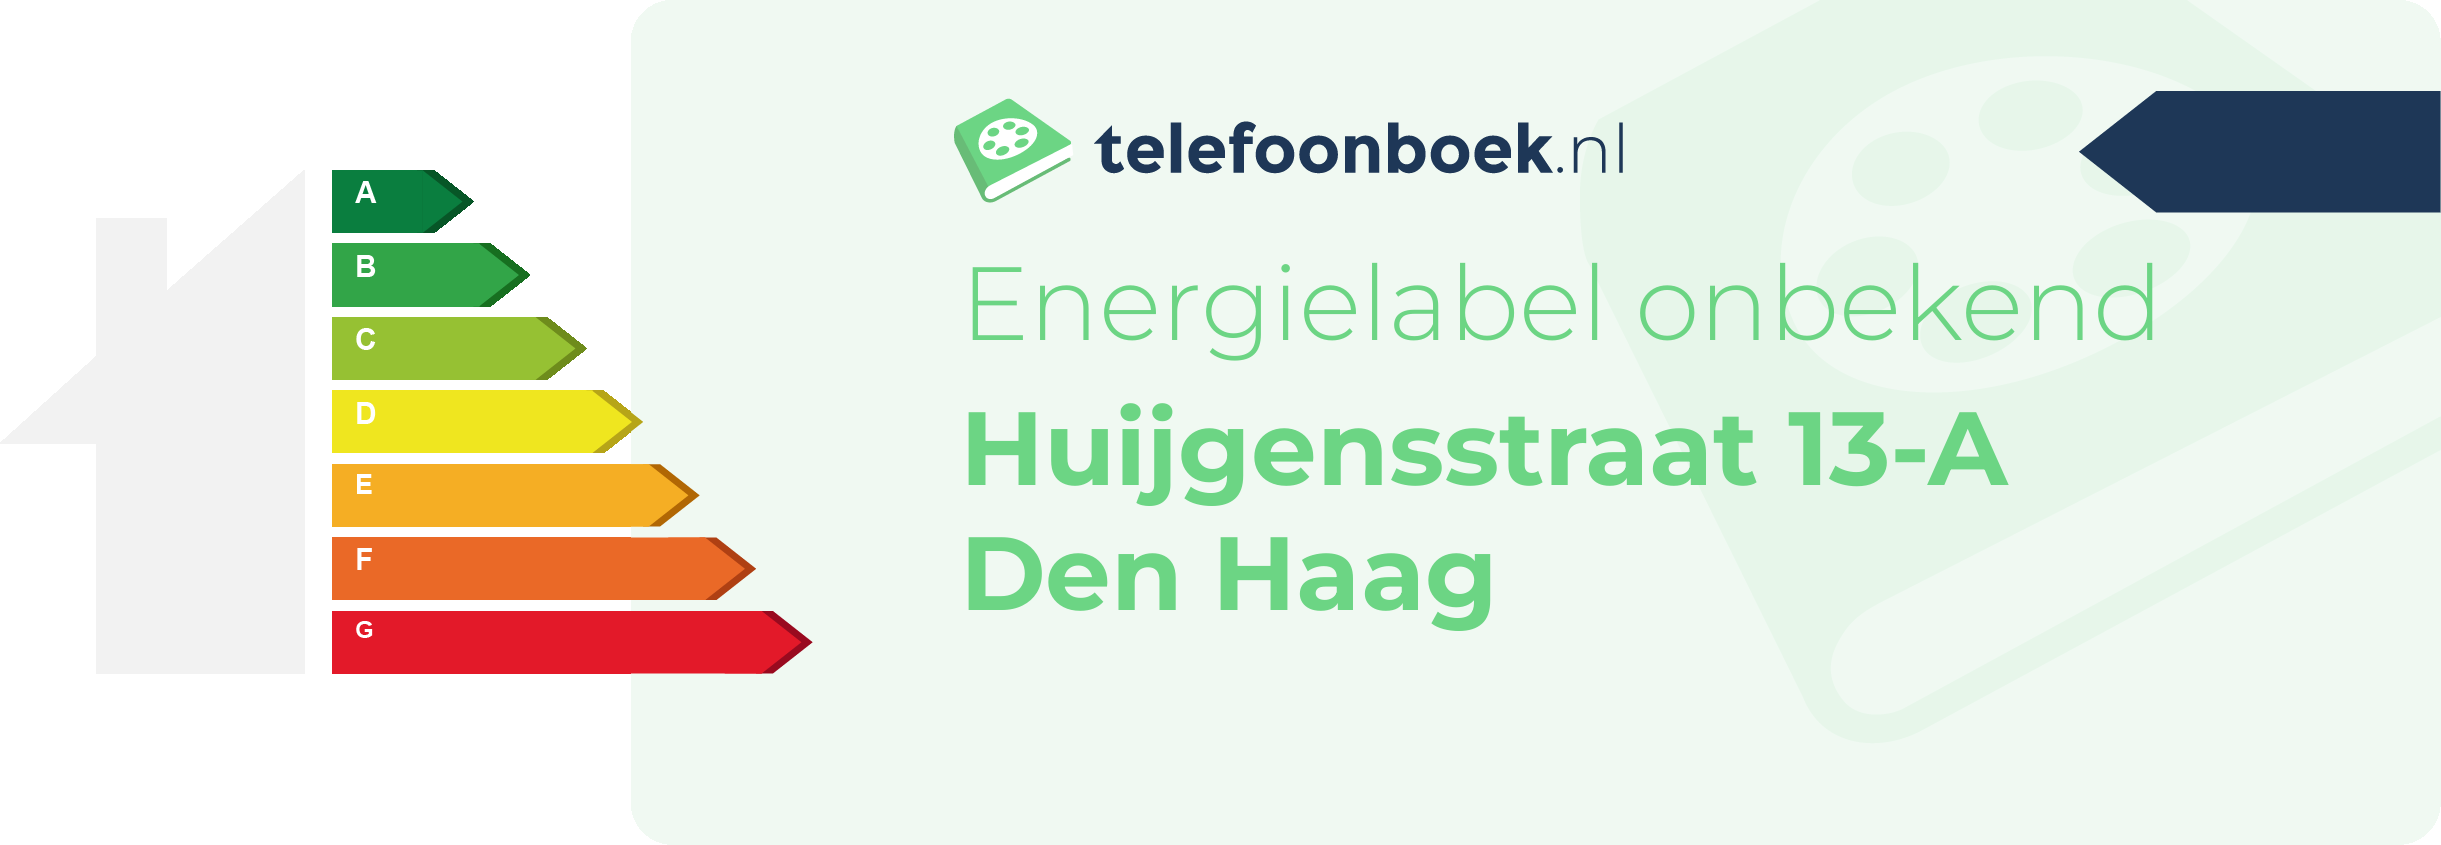 Energielabel Huijgensstraat 13-A Den Haag